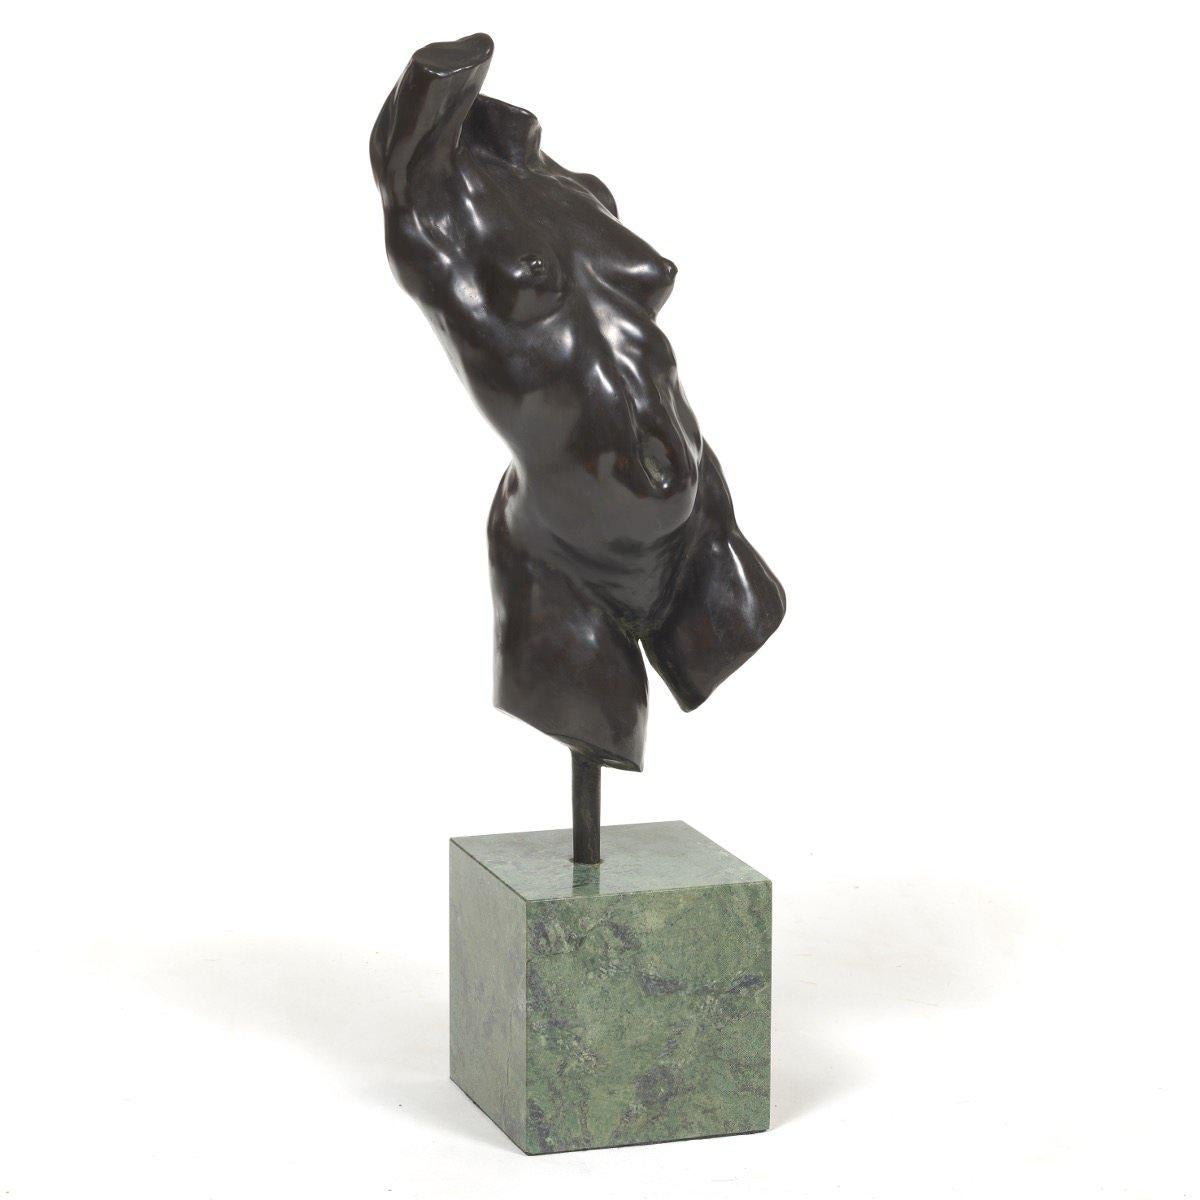 Nackter weiblicher Torso Bronzeskulptur, 20. Jahrhundert Zeitgenössischer amerikanischer Künstler – Sculpture von Alan Cottrill